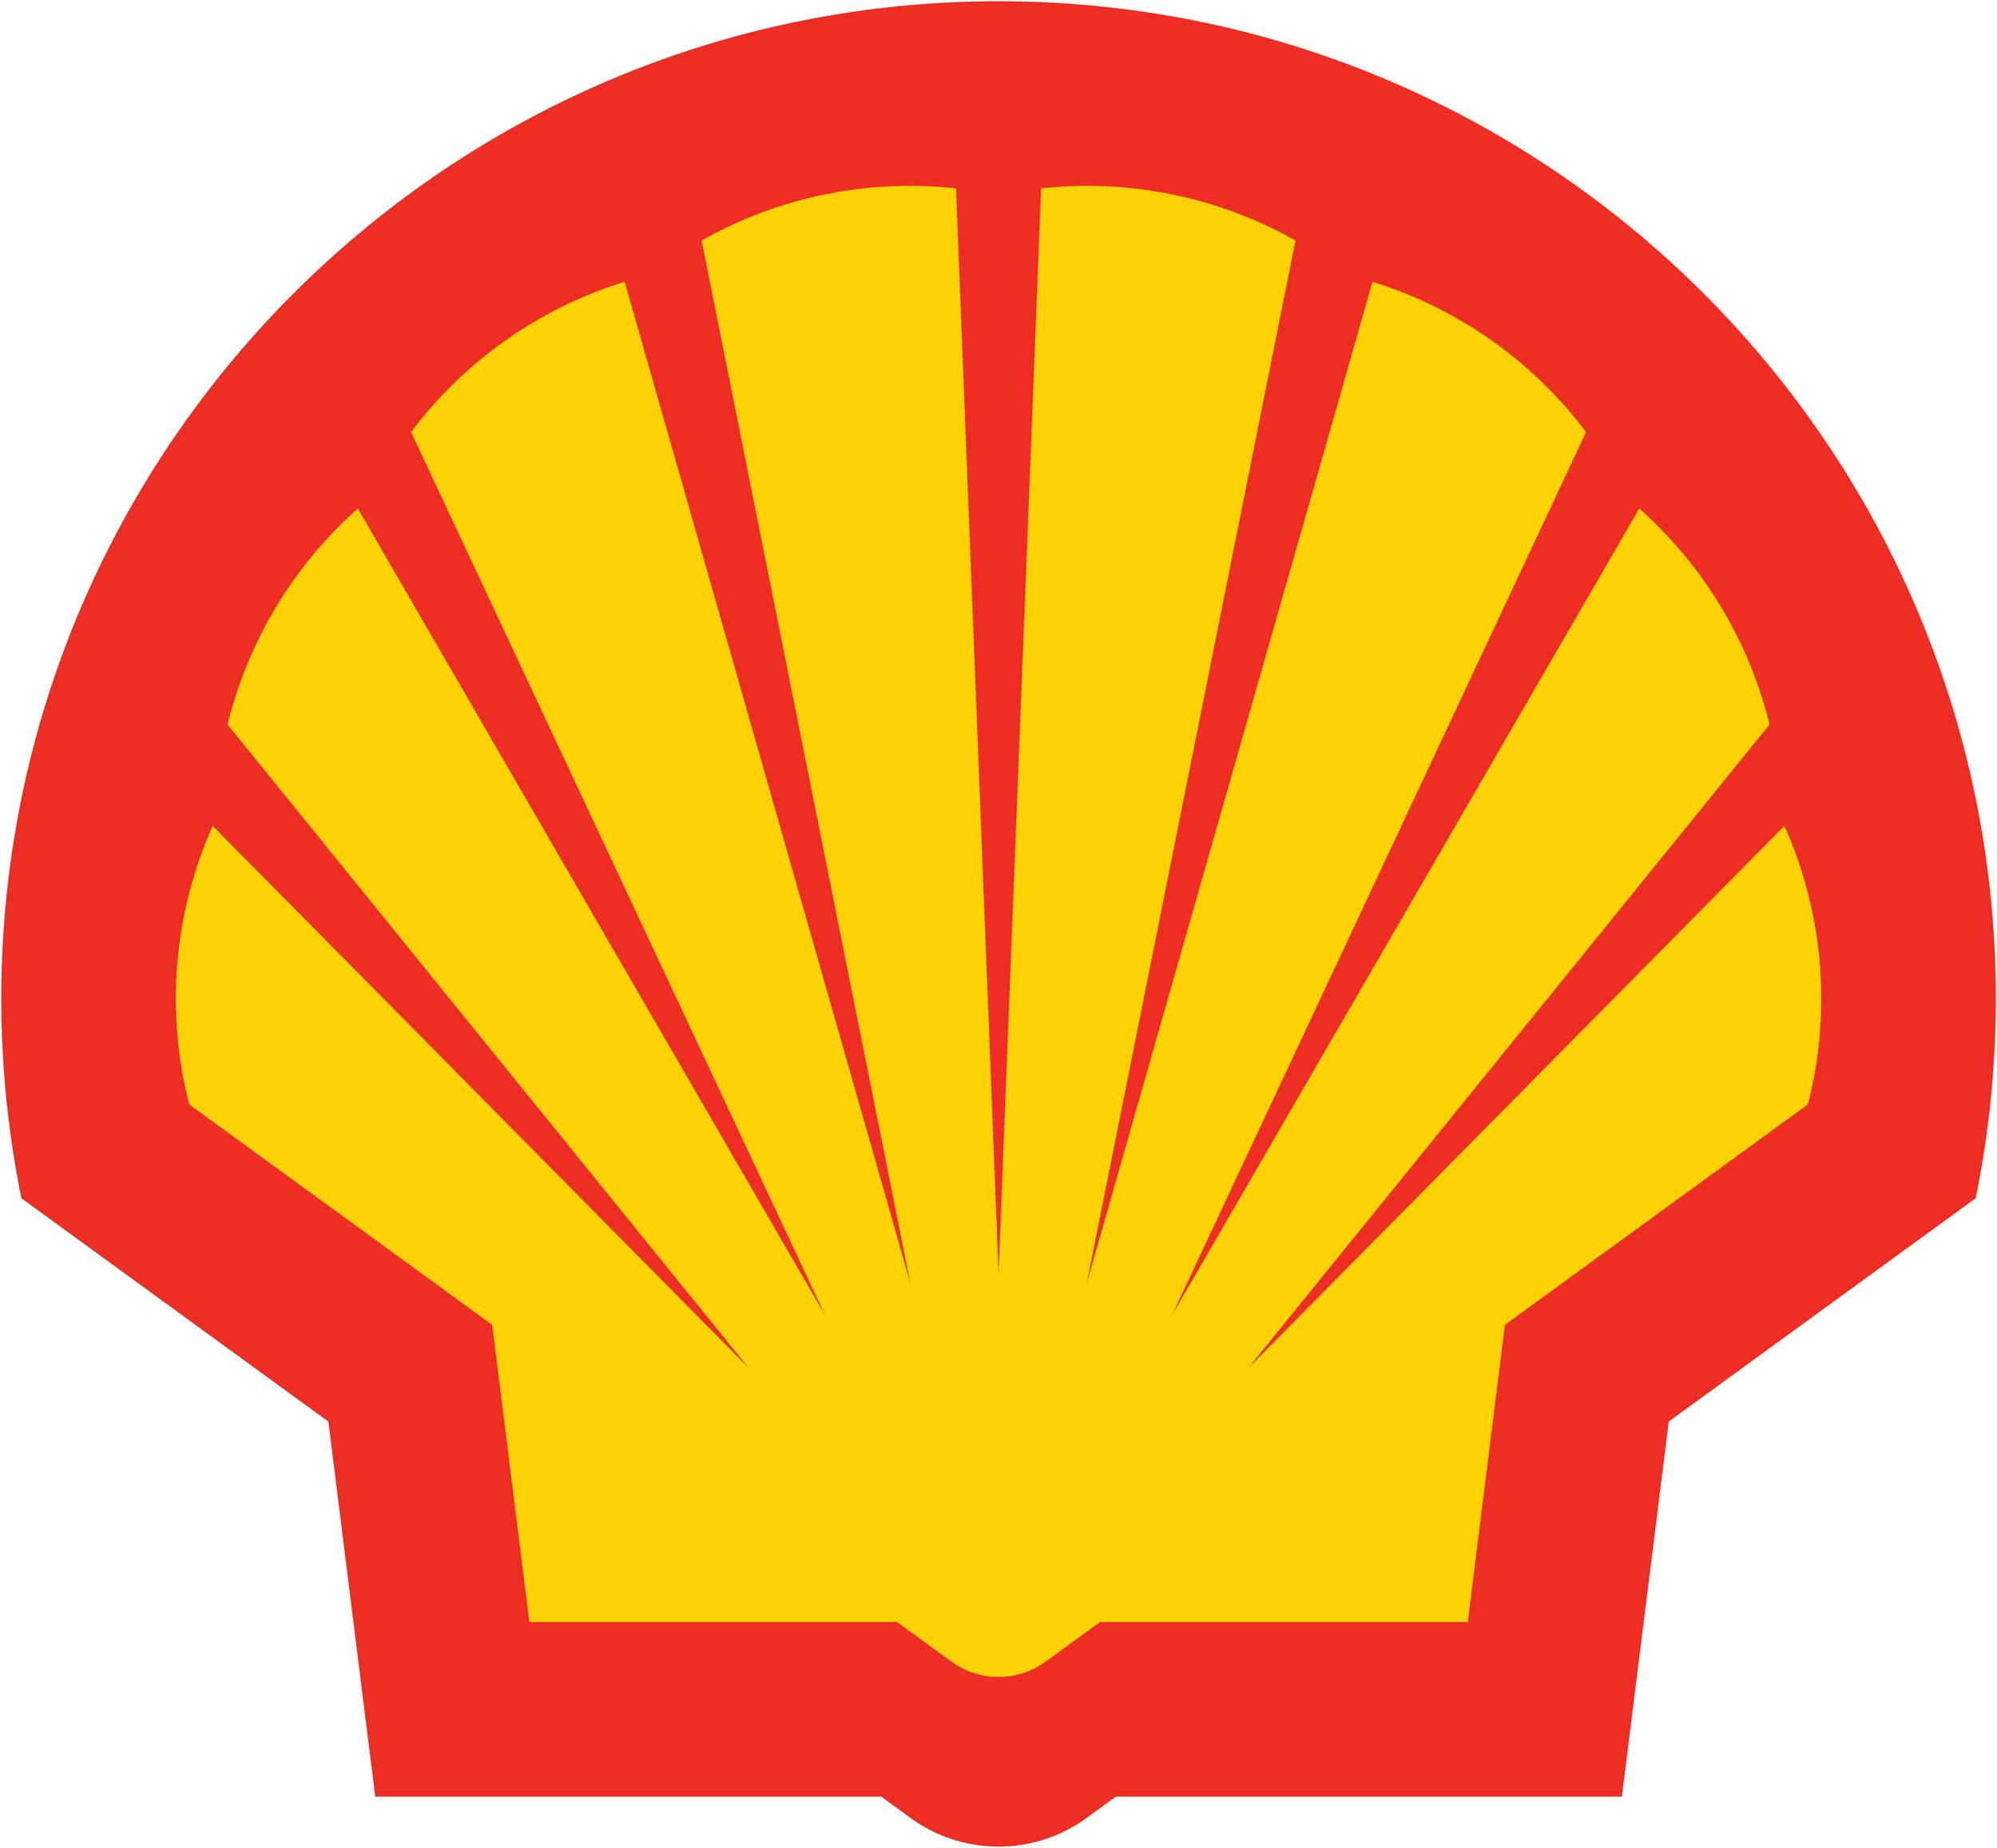 Shell logo.jpg